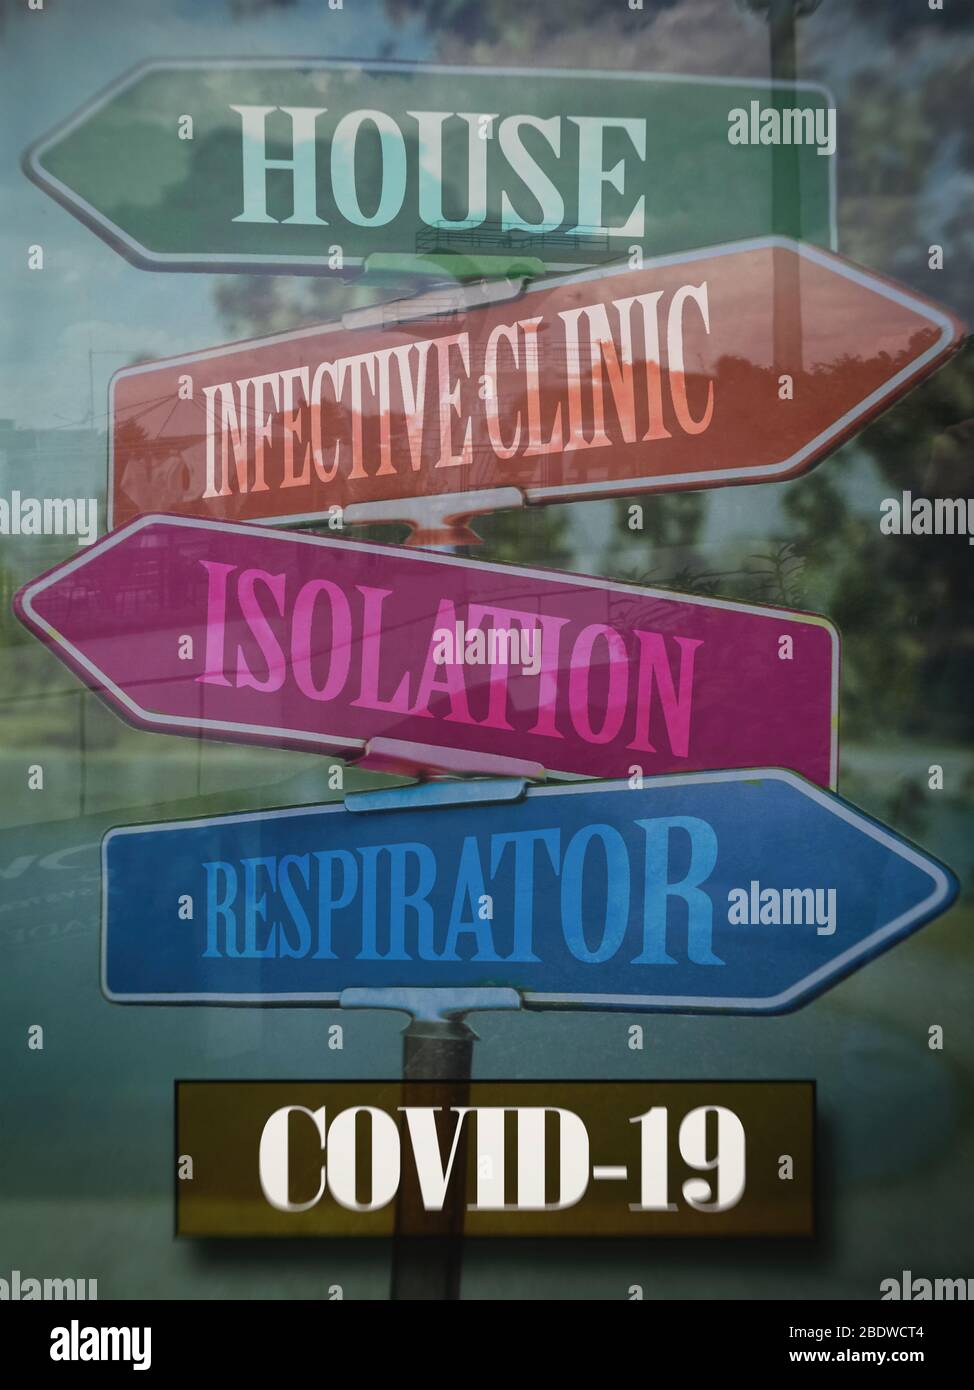 COVID-19, CORONAVIRUS, le frecce attraverso il vetro indicano la direzione del movimento: Casa - isolamento, clinica infettiva - respiratore, immagine sfocata. Foto Stock